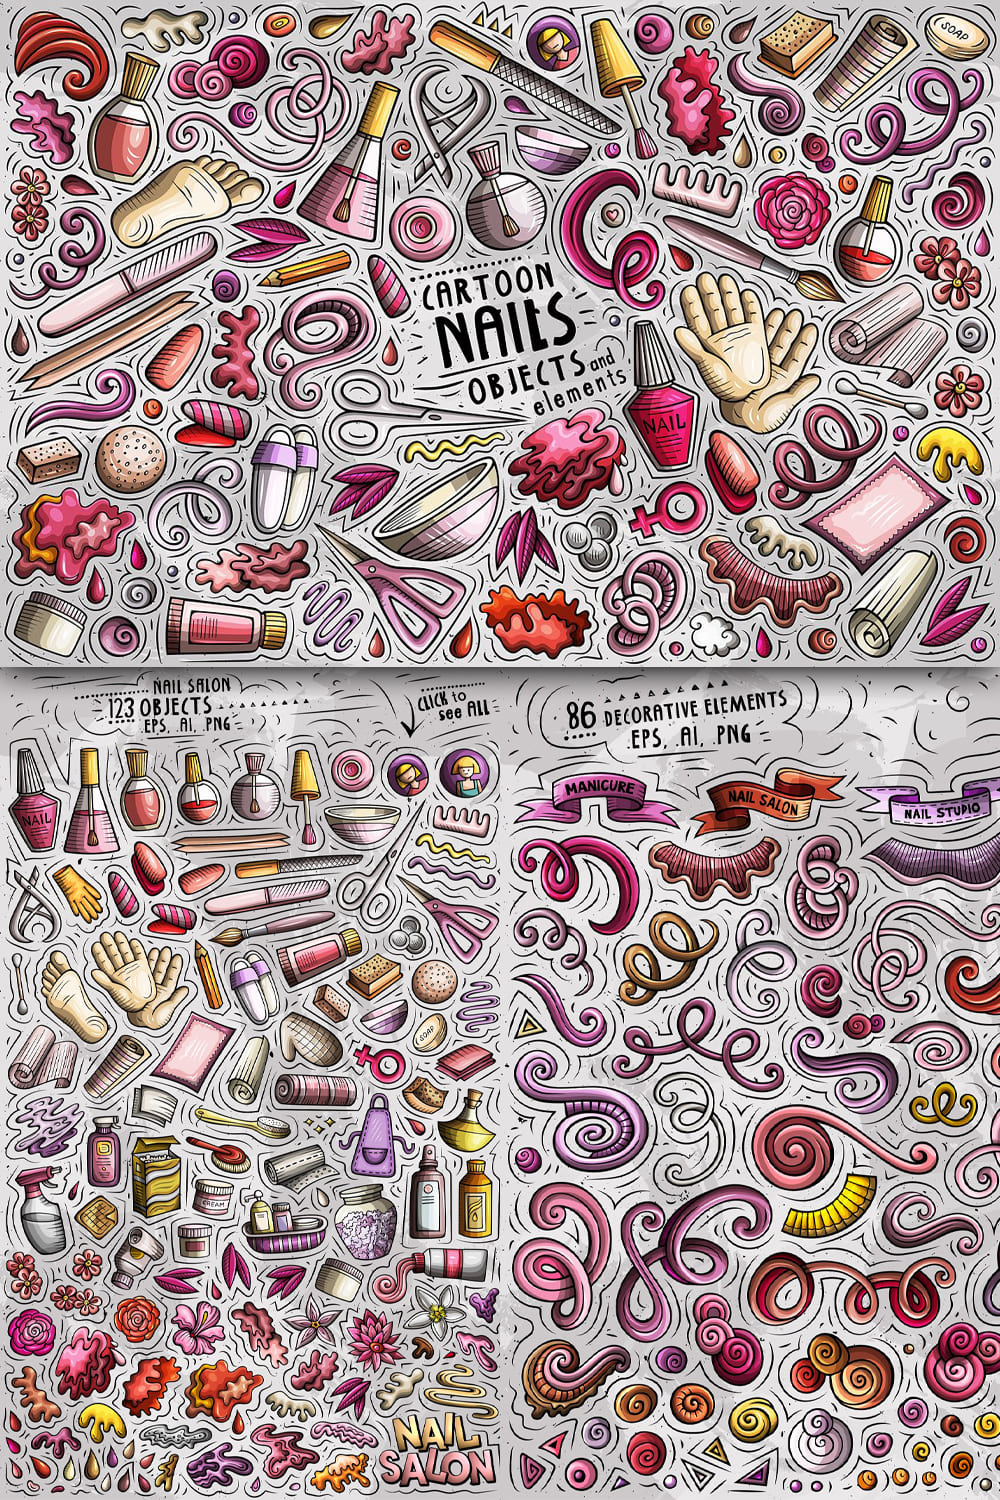 Nail Studio Cartoon Objects Set Pinterest 1000 1500.